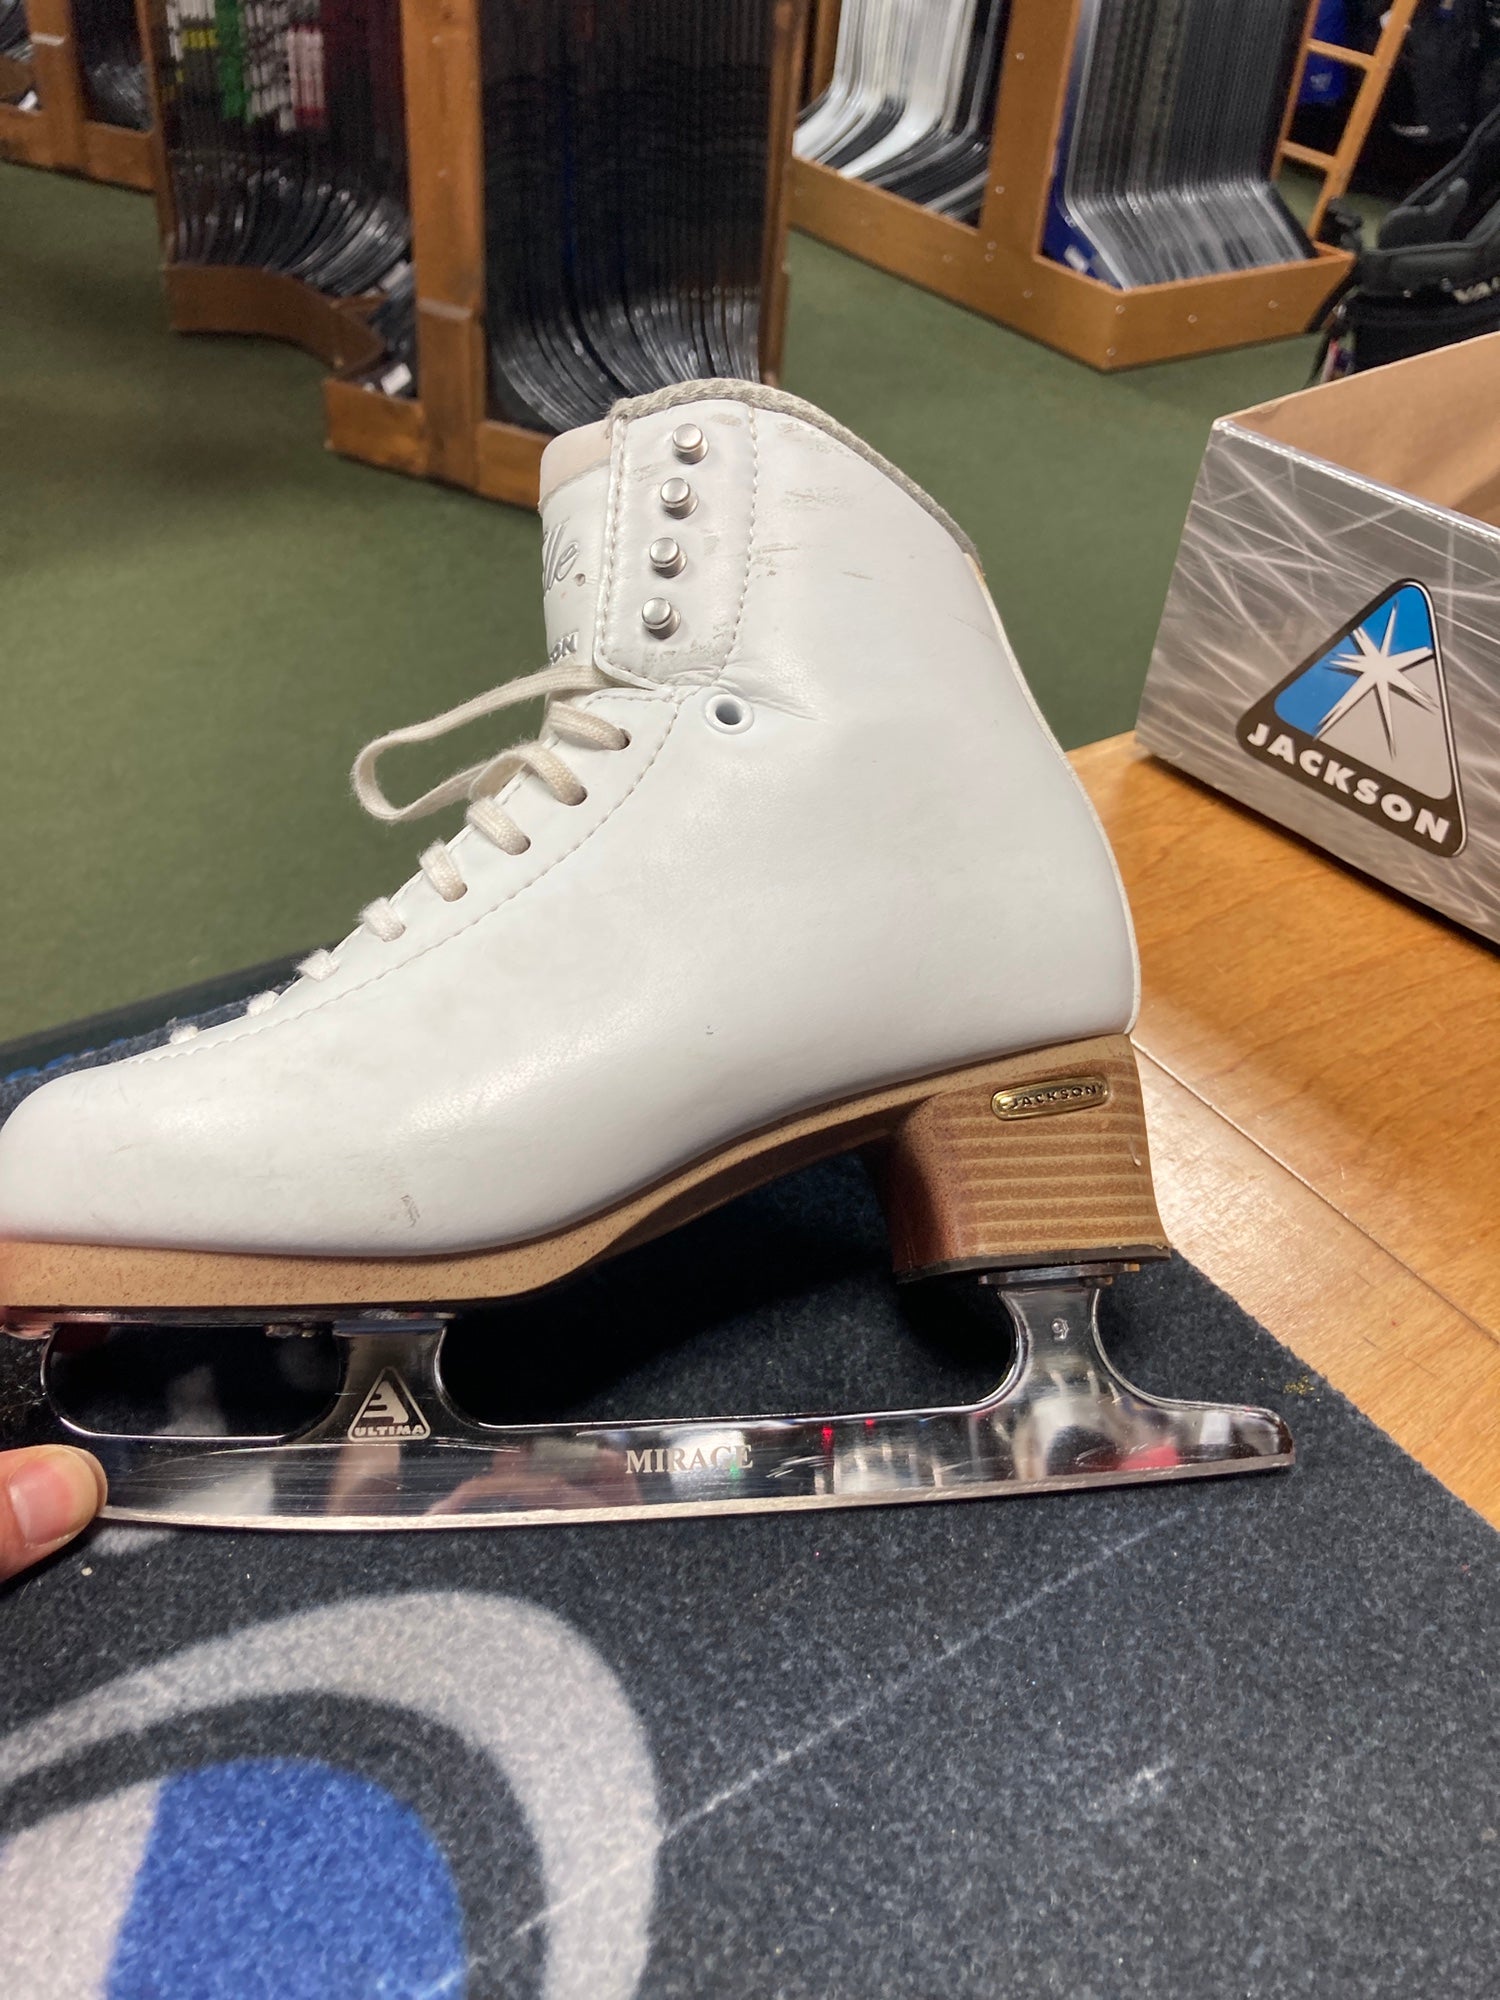 新商品!新型 Ice Skates Elle Fusion レディース FS2130